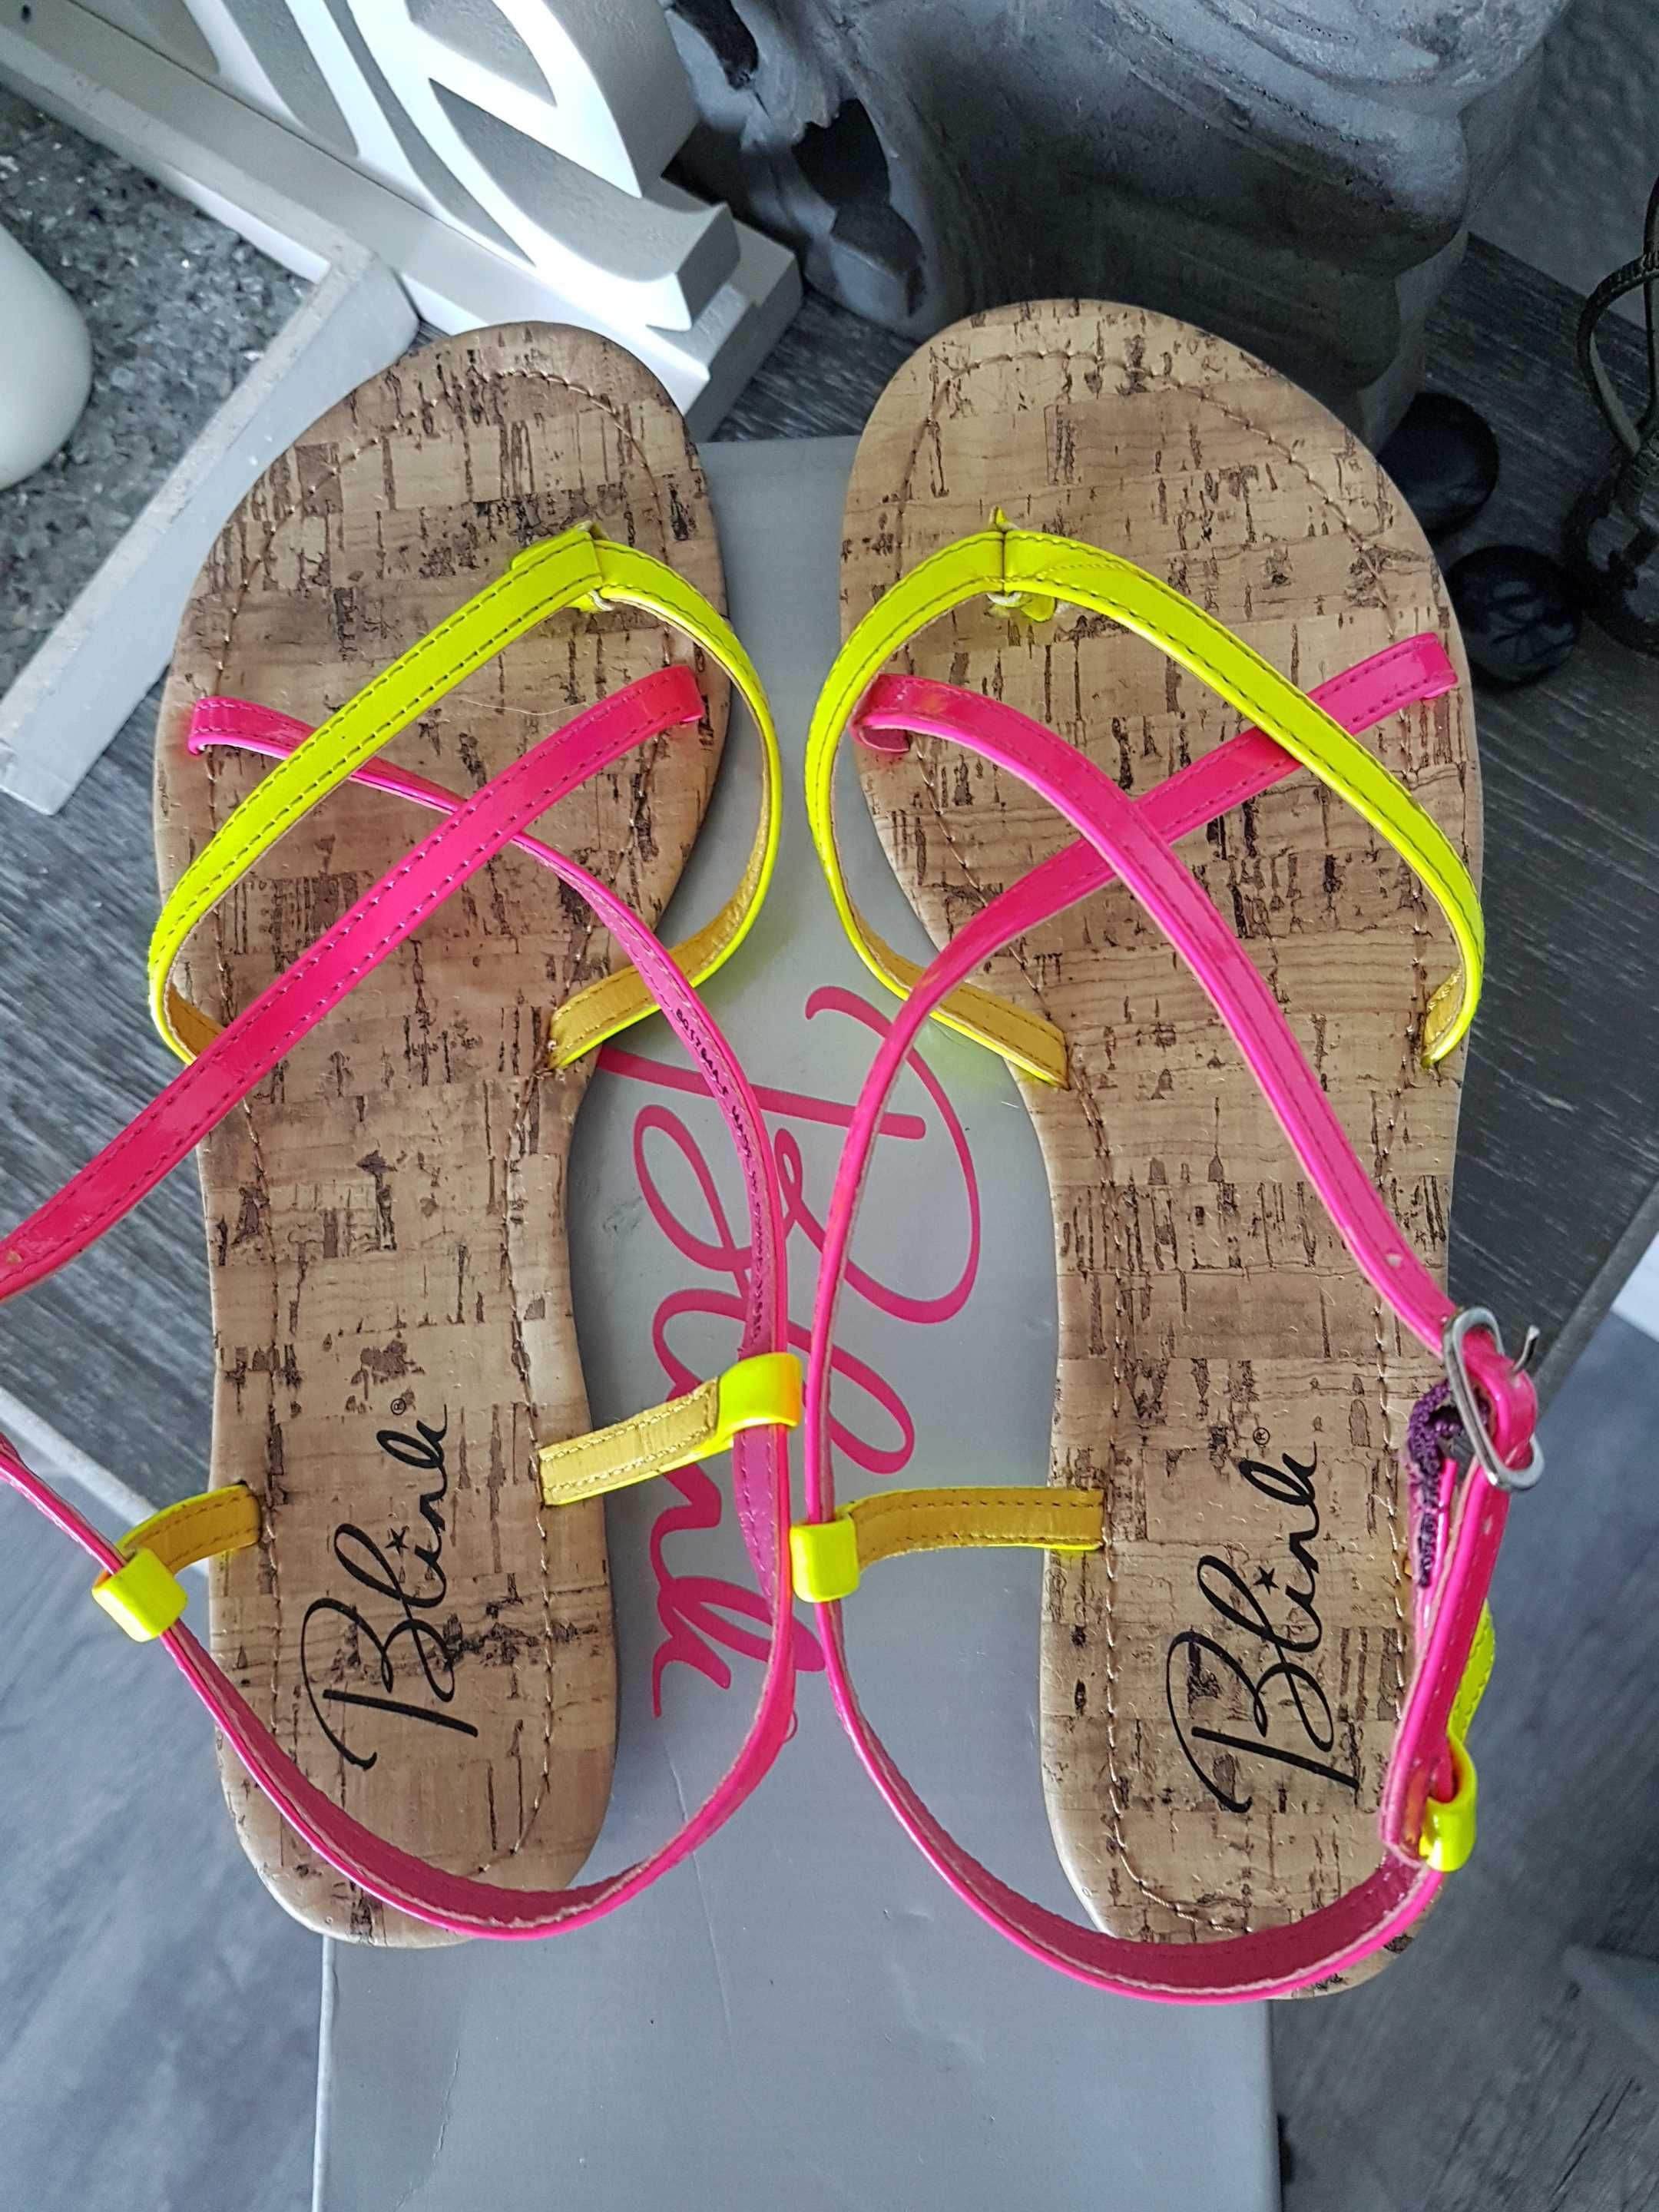 Nowe sandały japonki Blink neon żółty - różowy roz.37 wkładka 24cm